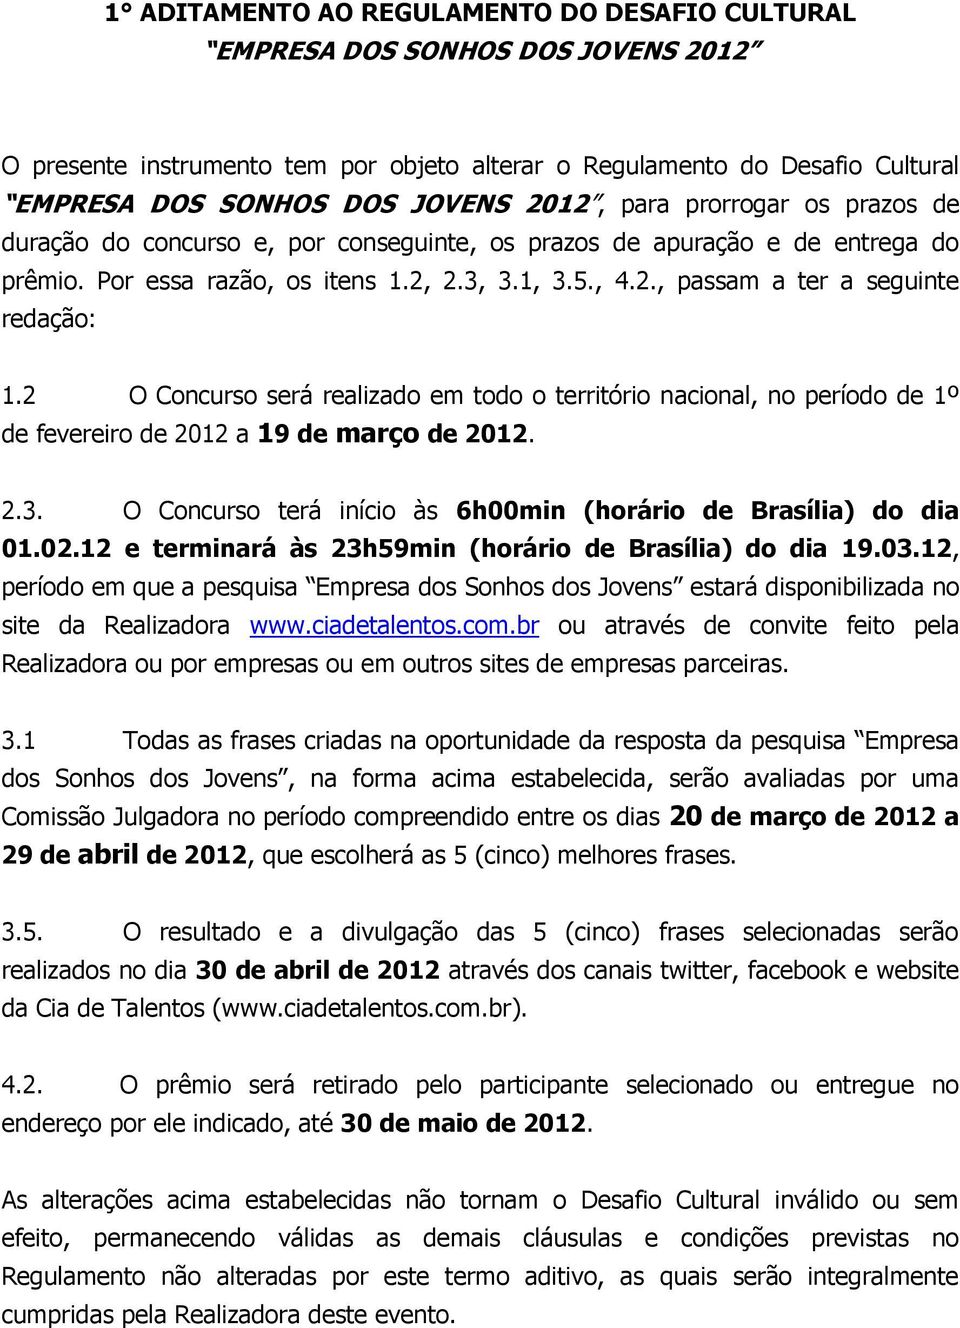 2 O Concurso será realizado em todo o território nacional, no período de 1º de fevereiro de 2012 a 19 de março de 2012. 2.3. O Concurso terá início às 6h00min (horário de Brasília) do dia 01.02.